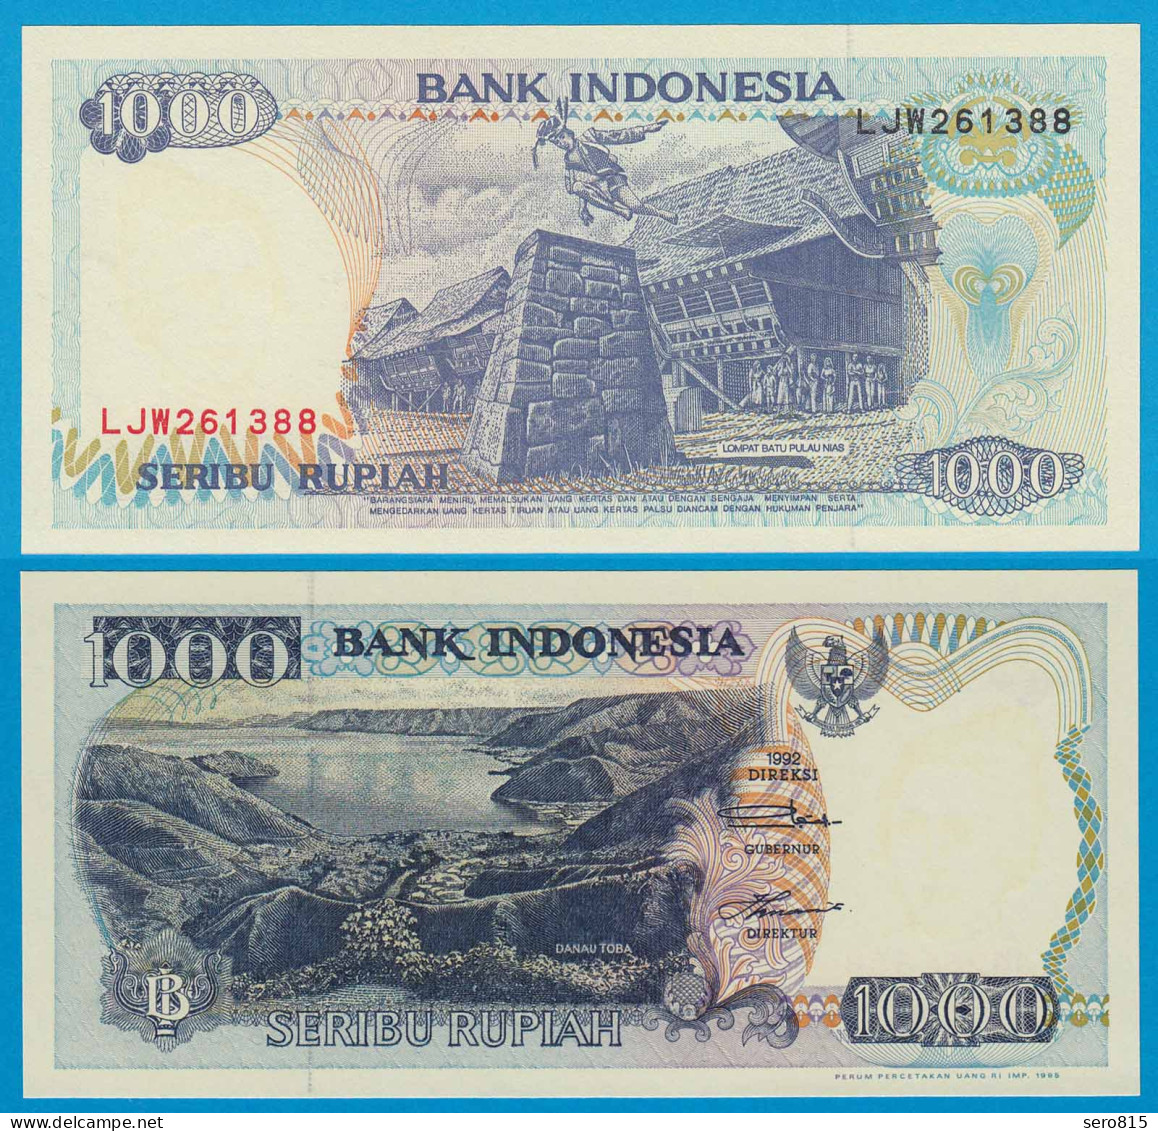 Indonesien - Indonesia 1000 Rupiah 1992/1995 Pick 129d UNC (1)   (18707 - Autres - Asie